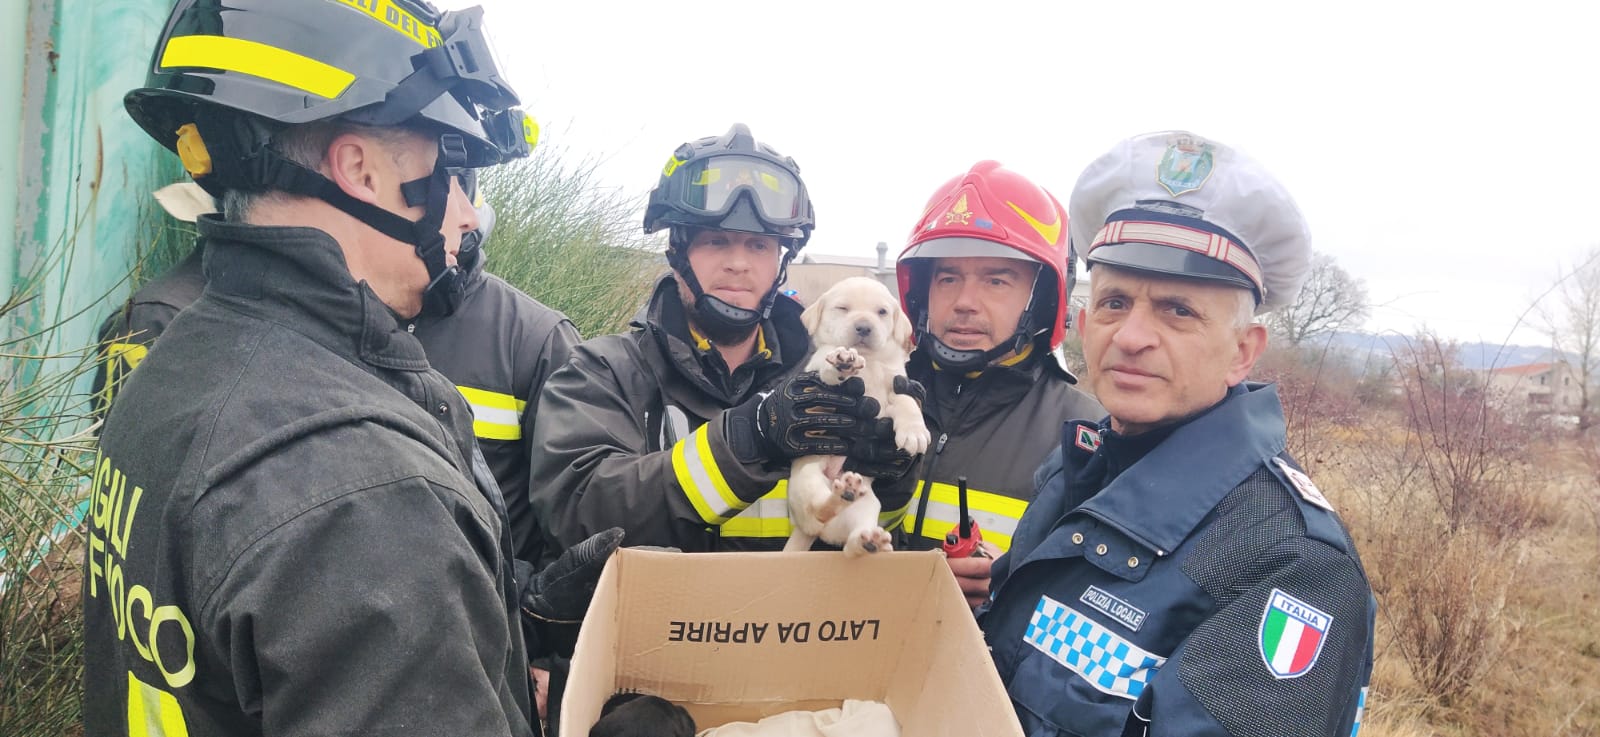 Campli – Cuccioli salvati dai vigili del fuoco a Campovalano